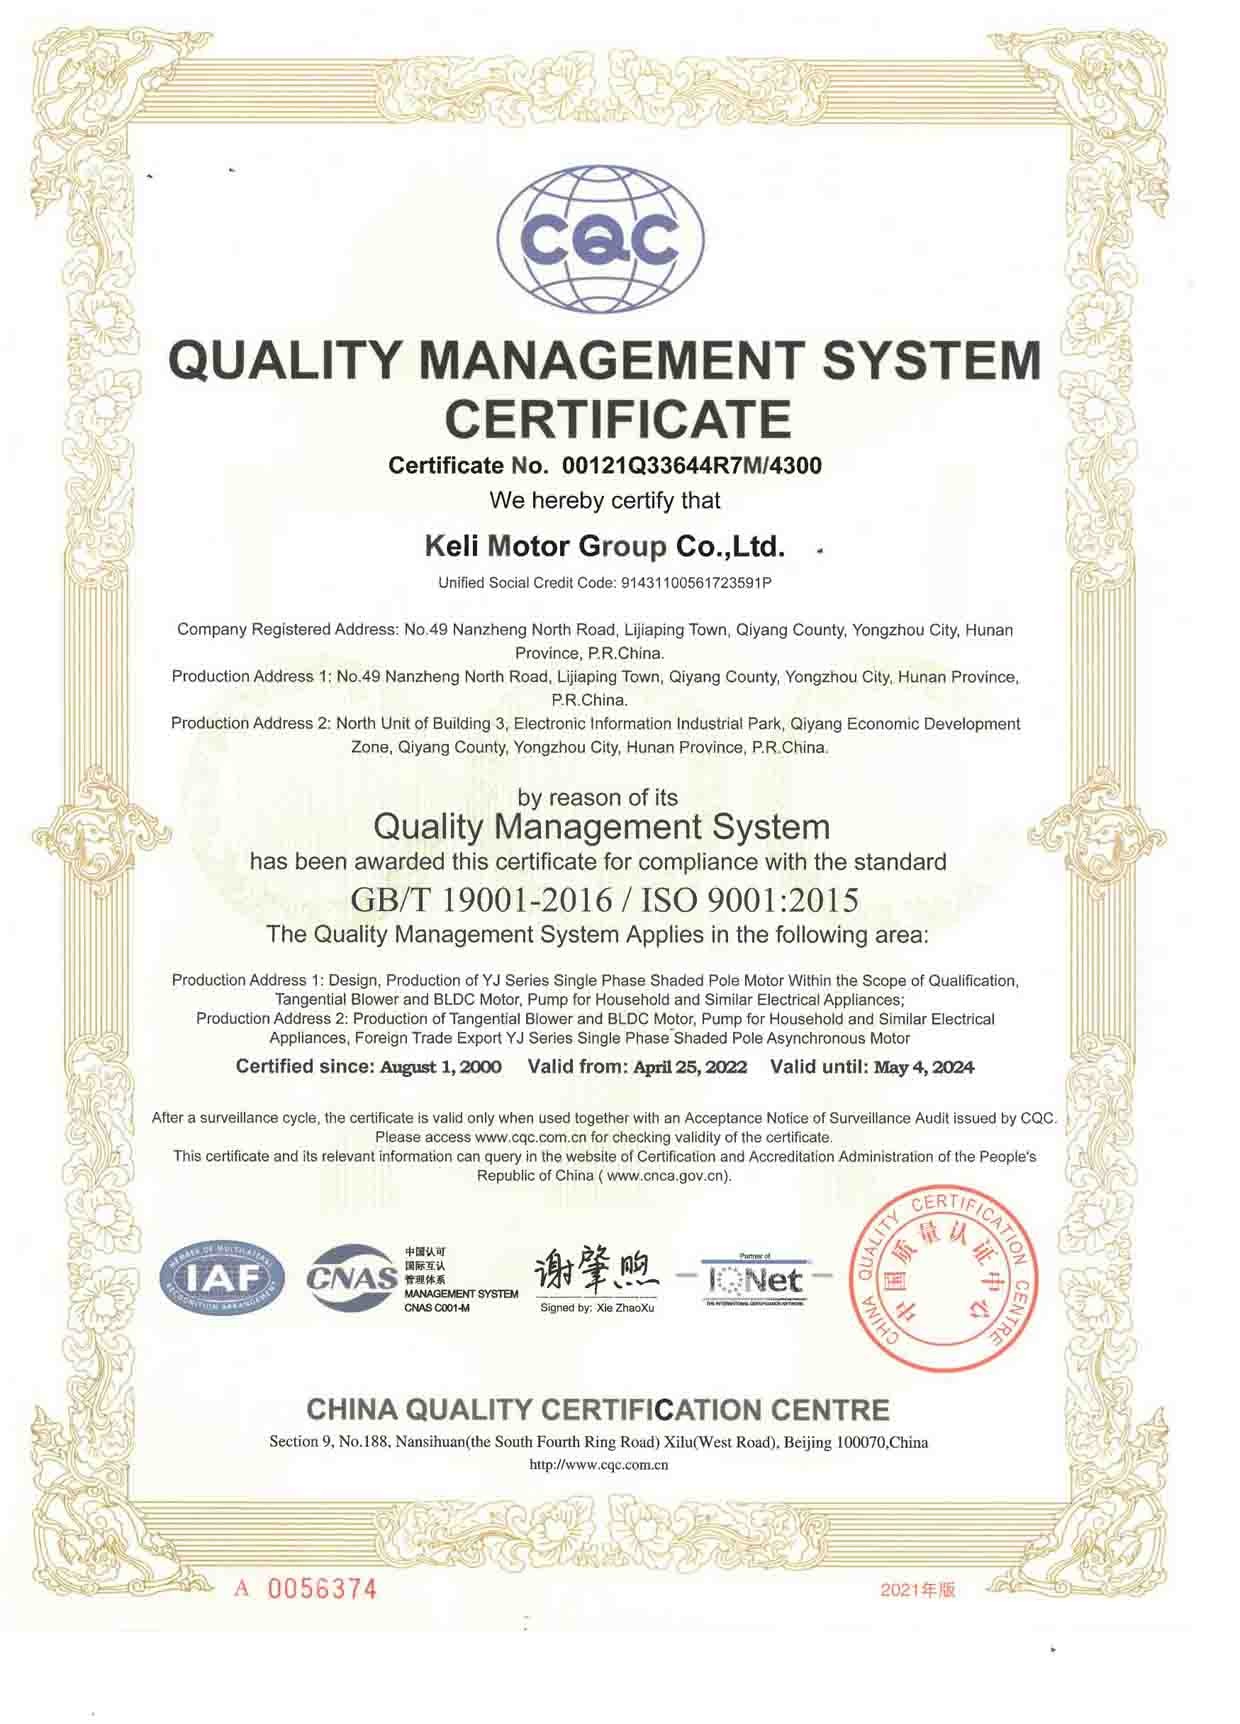 ISO9001-Zertifikat